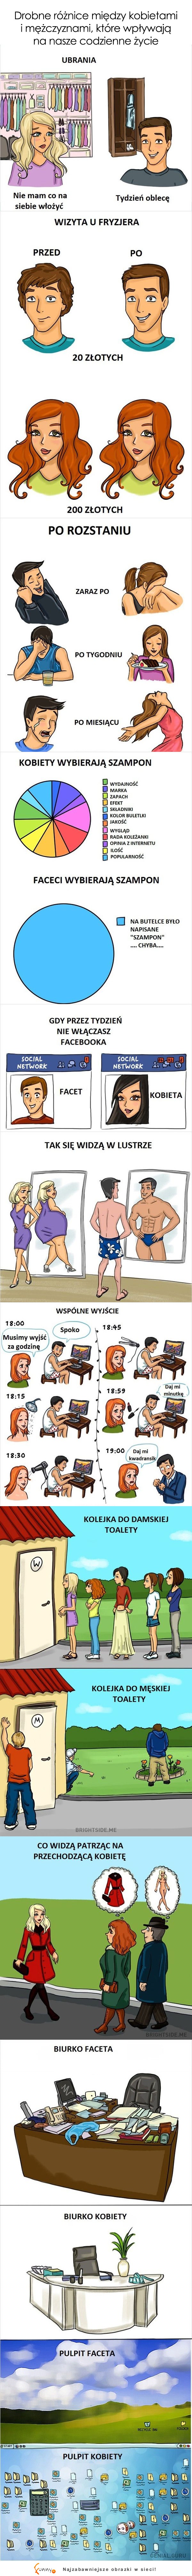 Różnice między kobietami a facetami!